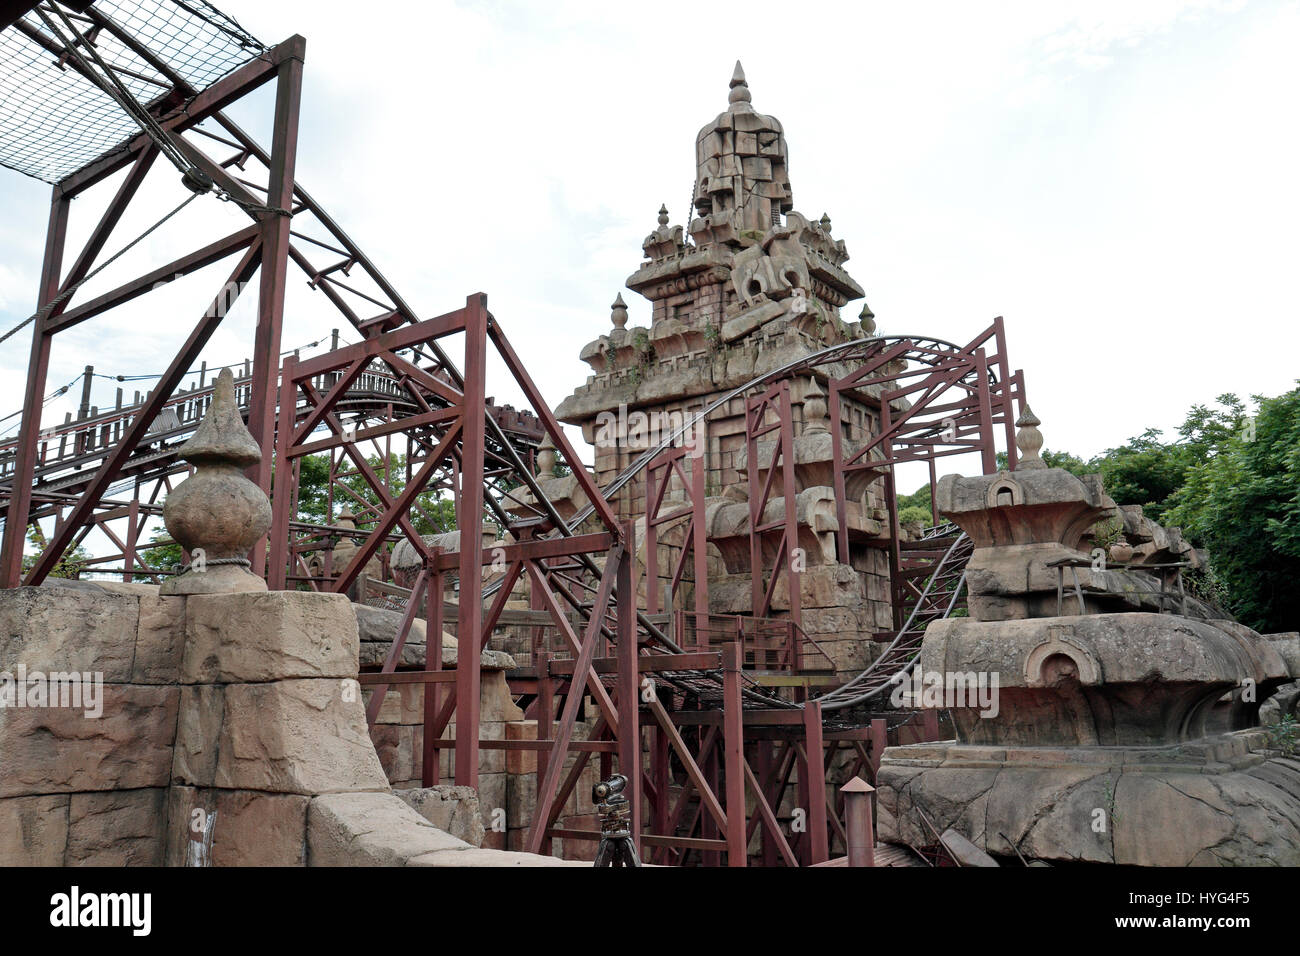 Indiana Jones und der Tempel der Gefahr, Disneyland Paris, Marne-la-Vallée, in der Nähe von Paris, Frankreich. Stockfoto